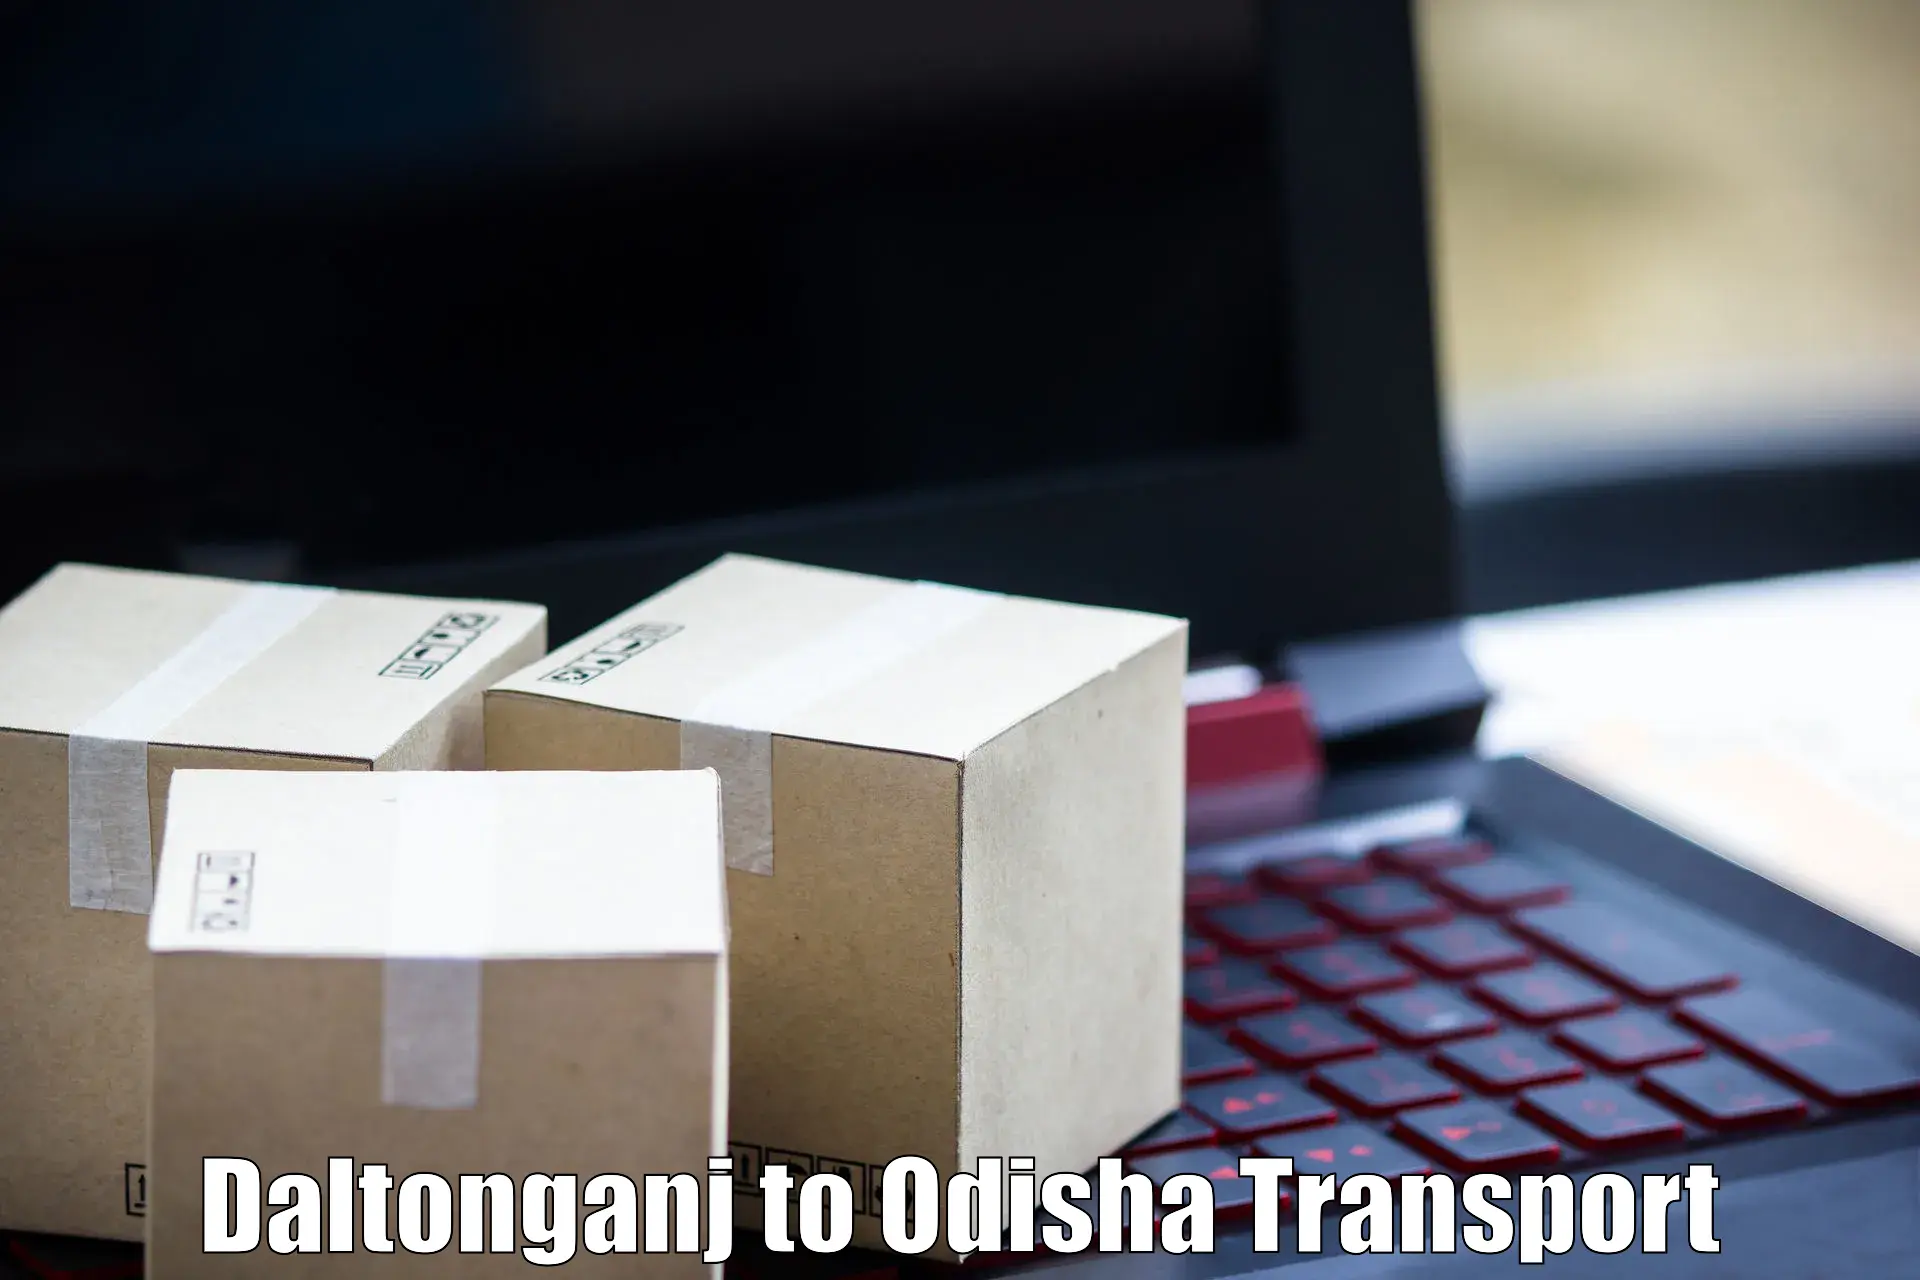 Commercial transport service Daltonganj to Chikiti